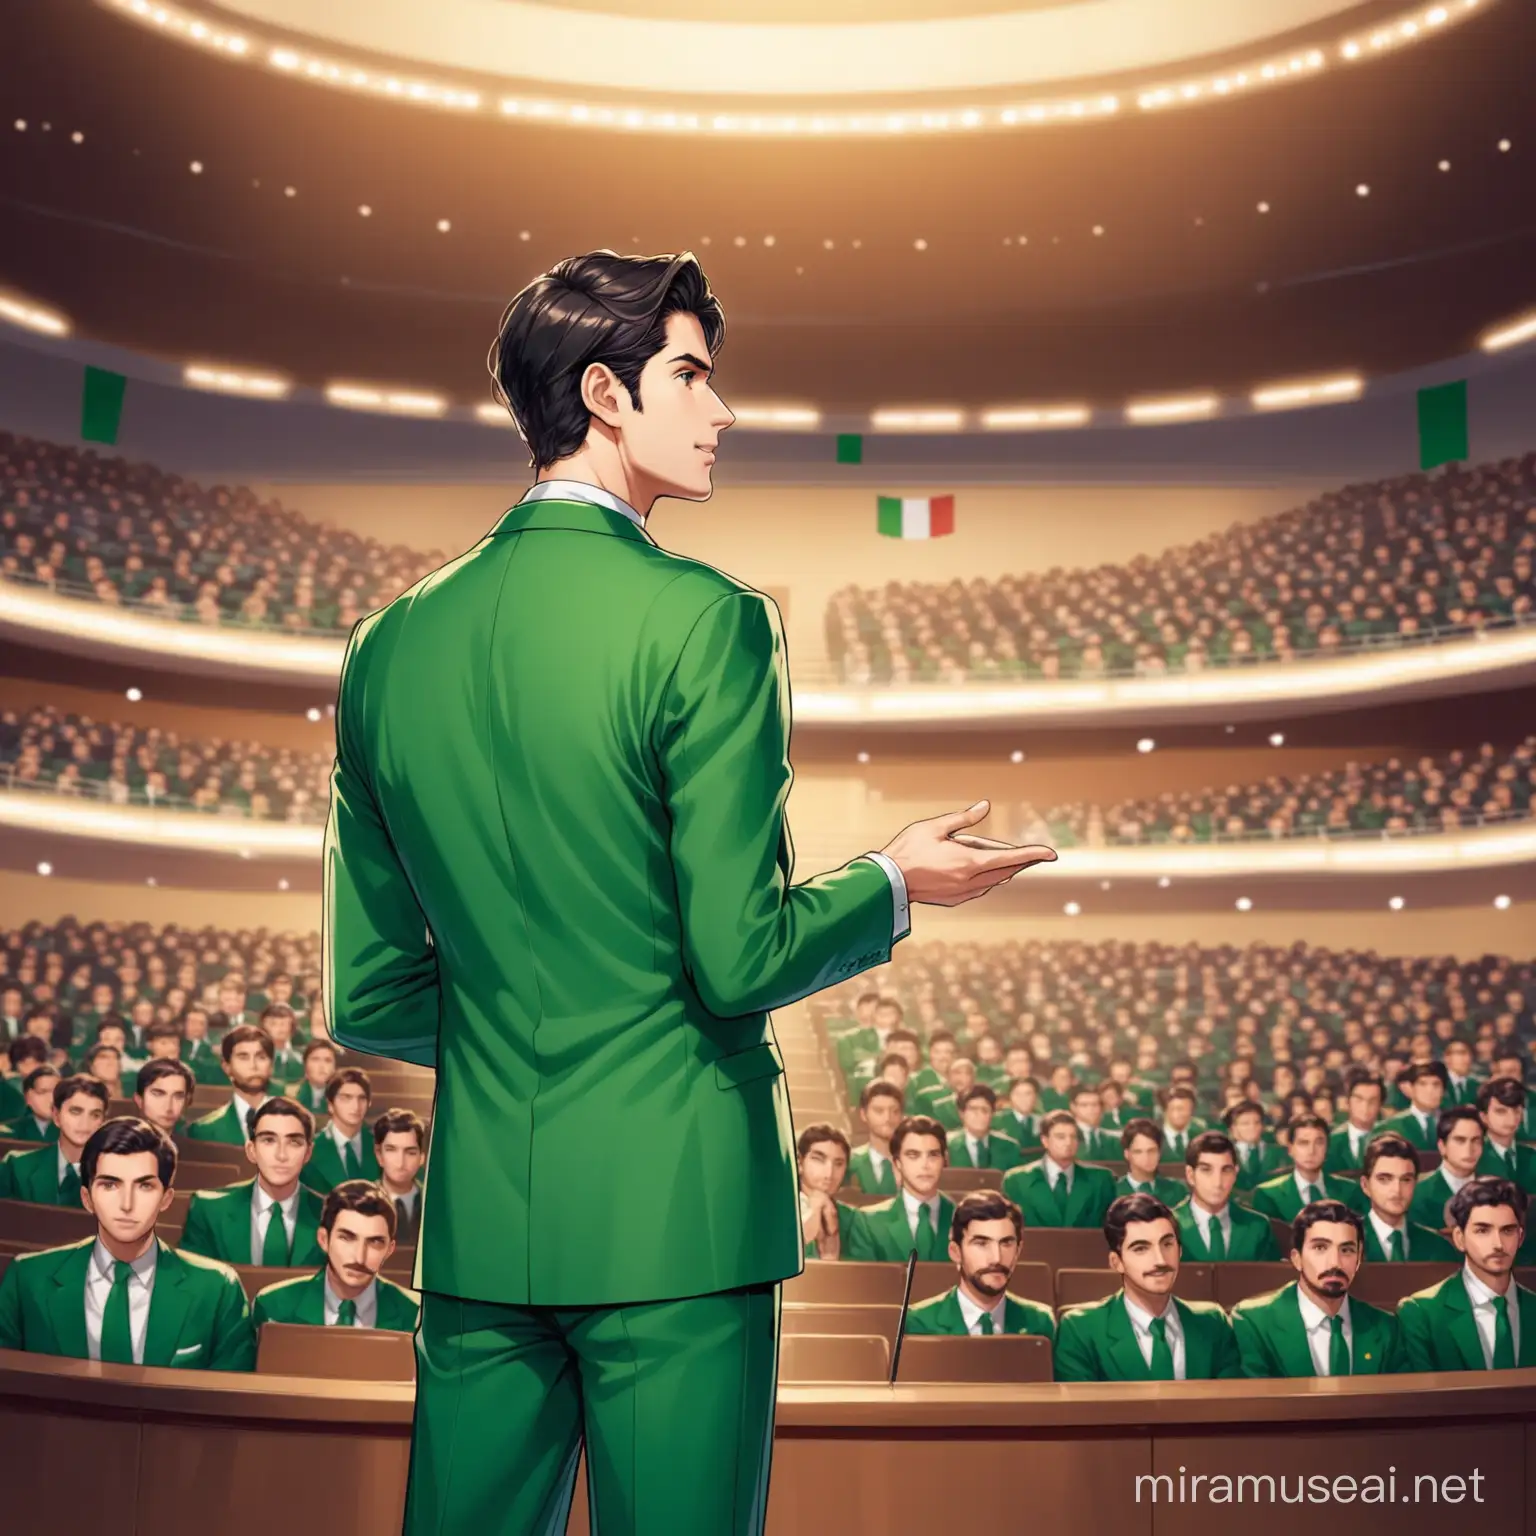 Italian Lecture Handsome Gentleman in Green Suit